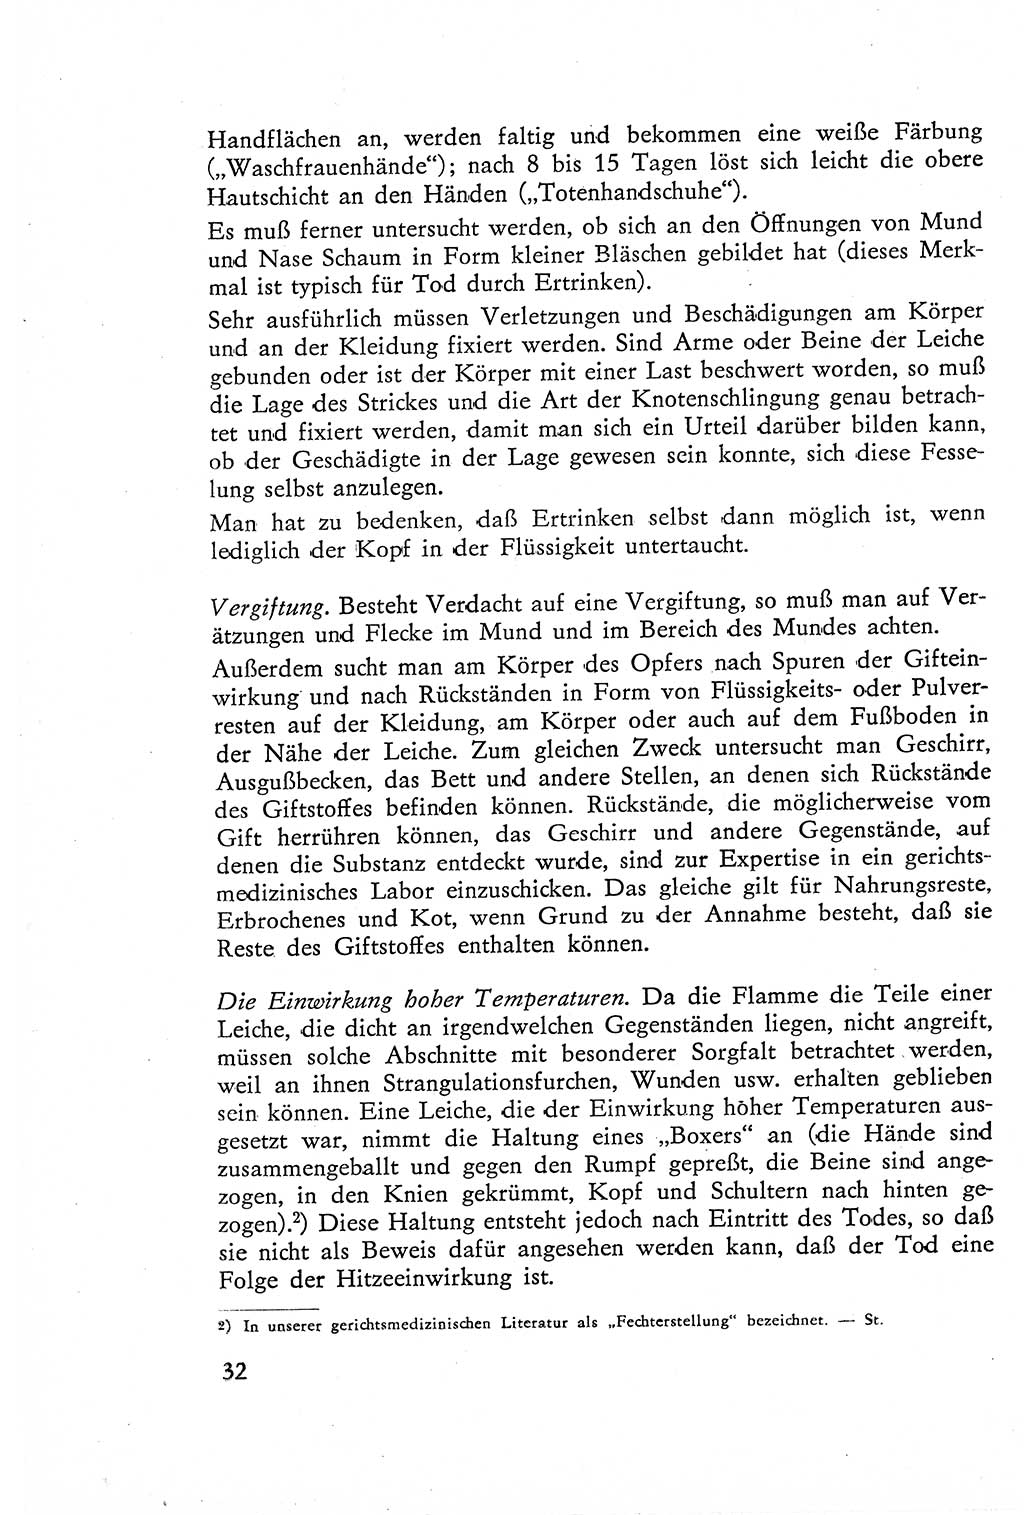 Die Untersuchung einzelner Verbrechensarten [Deutsche Demokratische Republik (DDR)] 1960, Seite 32 (Unters. Verbr.-Art. DDR 1960, S. 32)